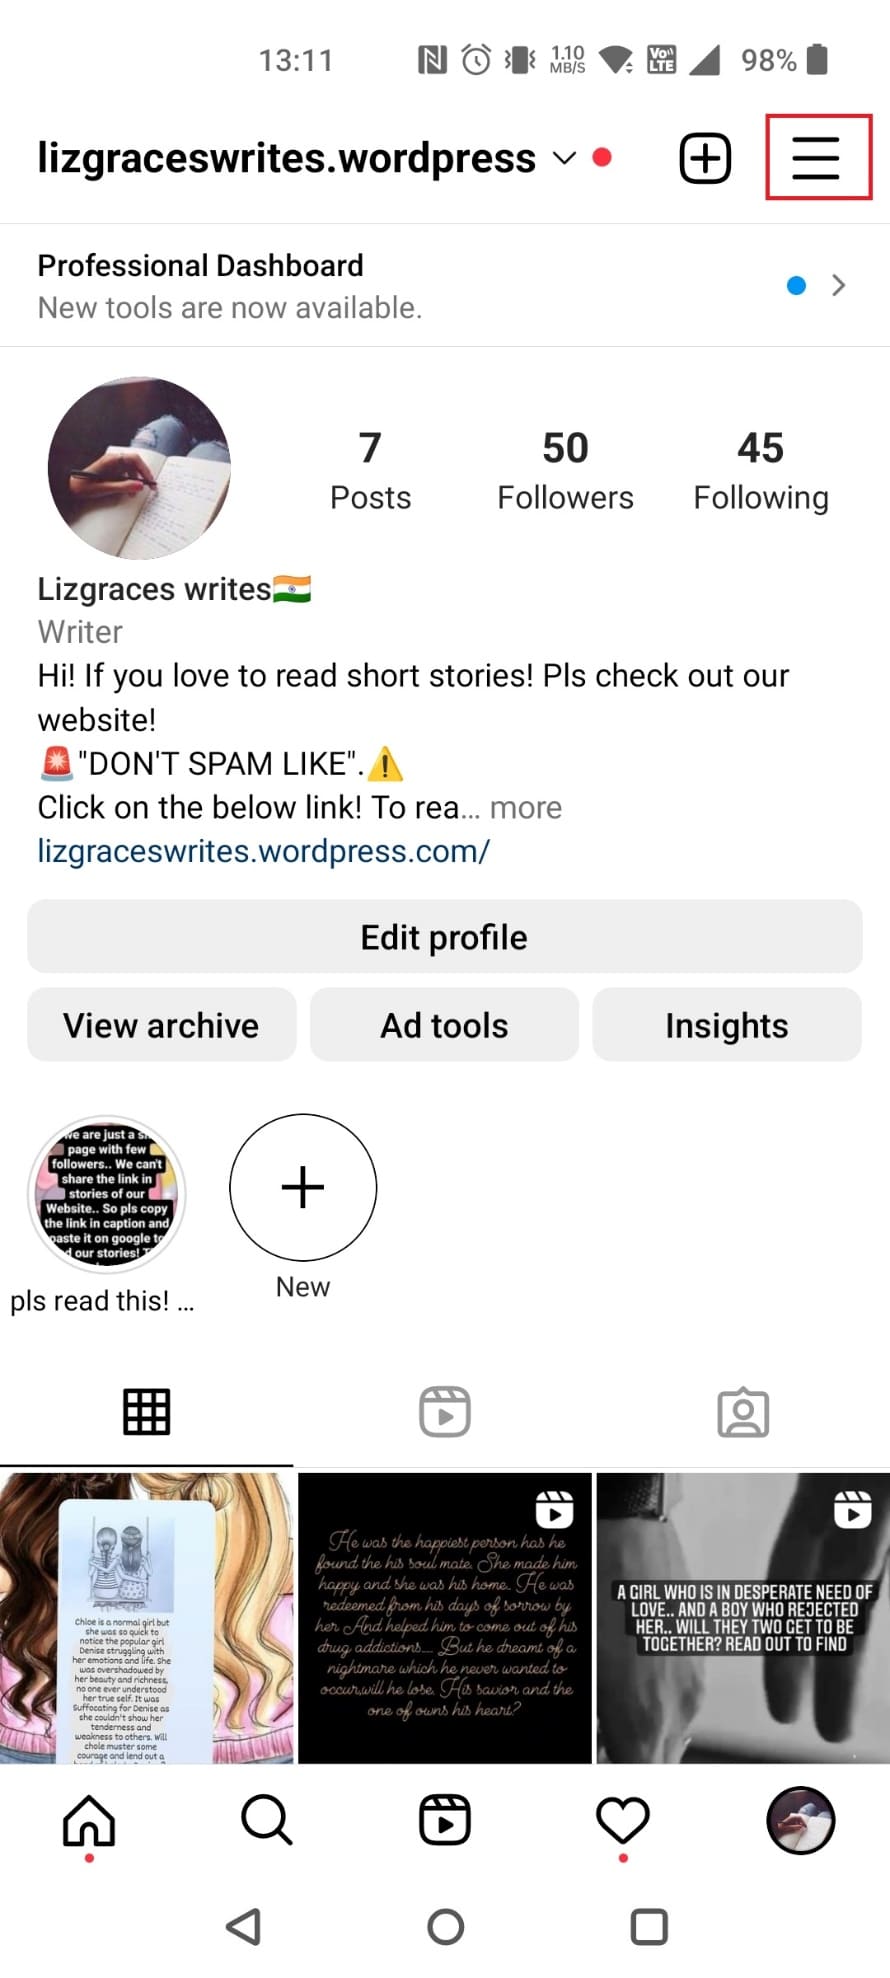 Kliknij trzy poziome linie w prawym górnym rogu | Jak zobaczyć usuniętą historię wyszukiwania na Instagramie